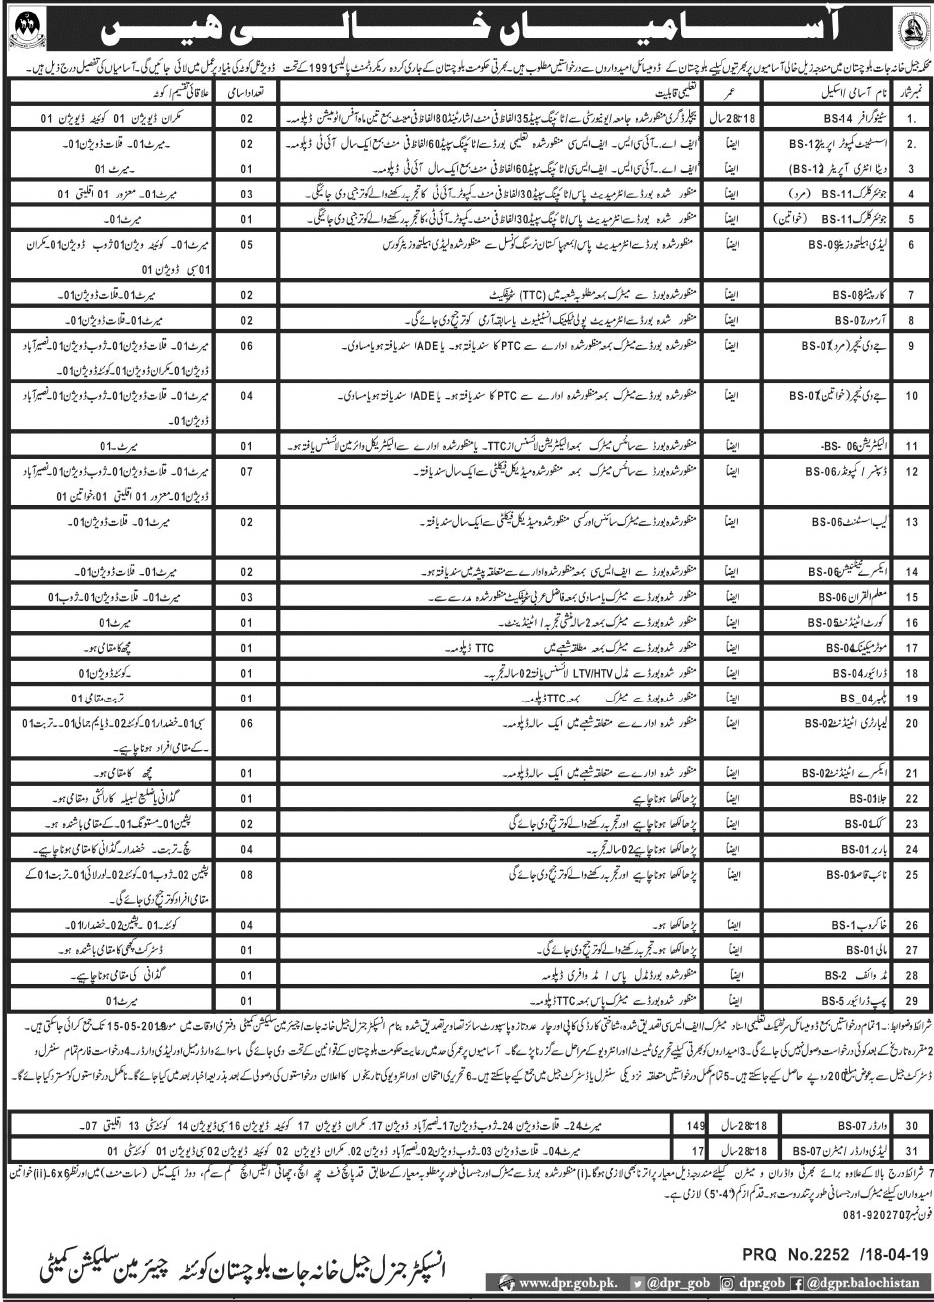 Jail Khana Jaat Balochistan Jobs Aapplication Form 2019 Last Date